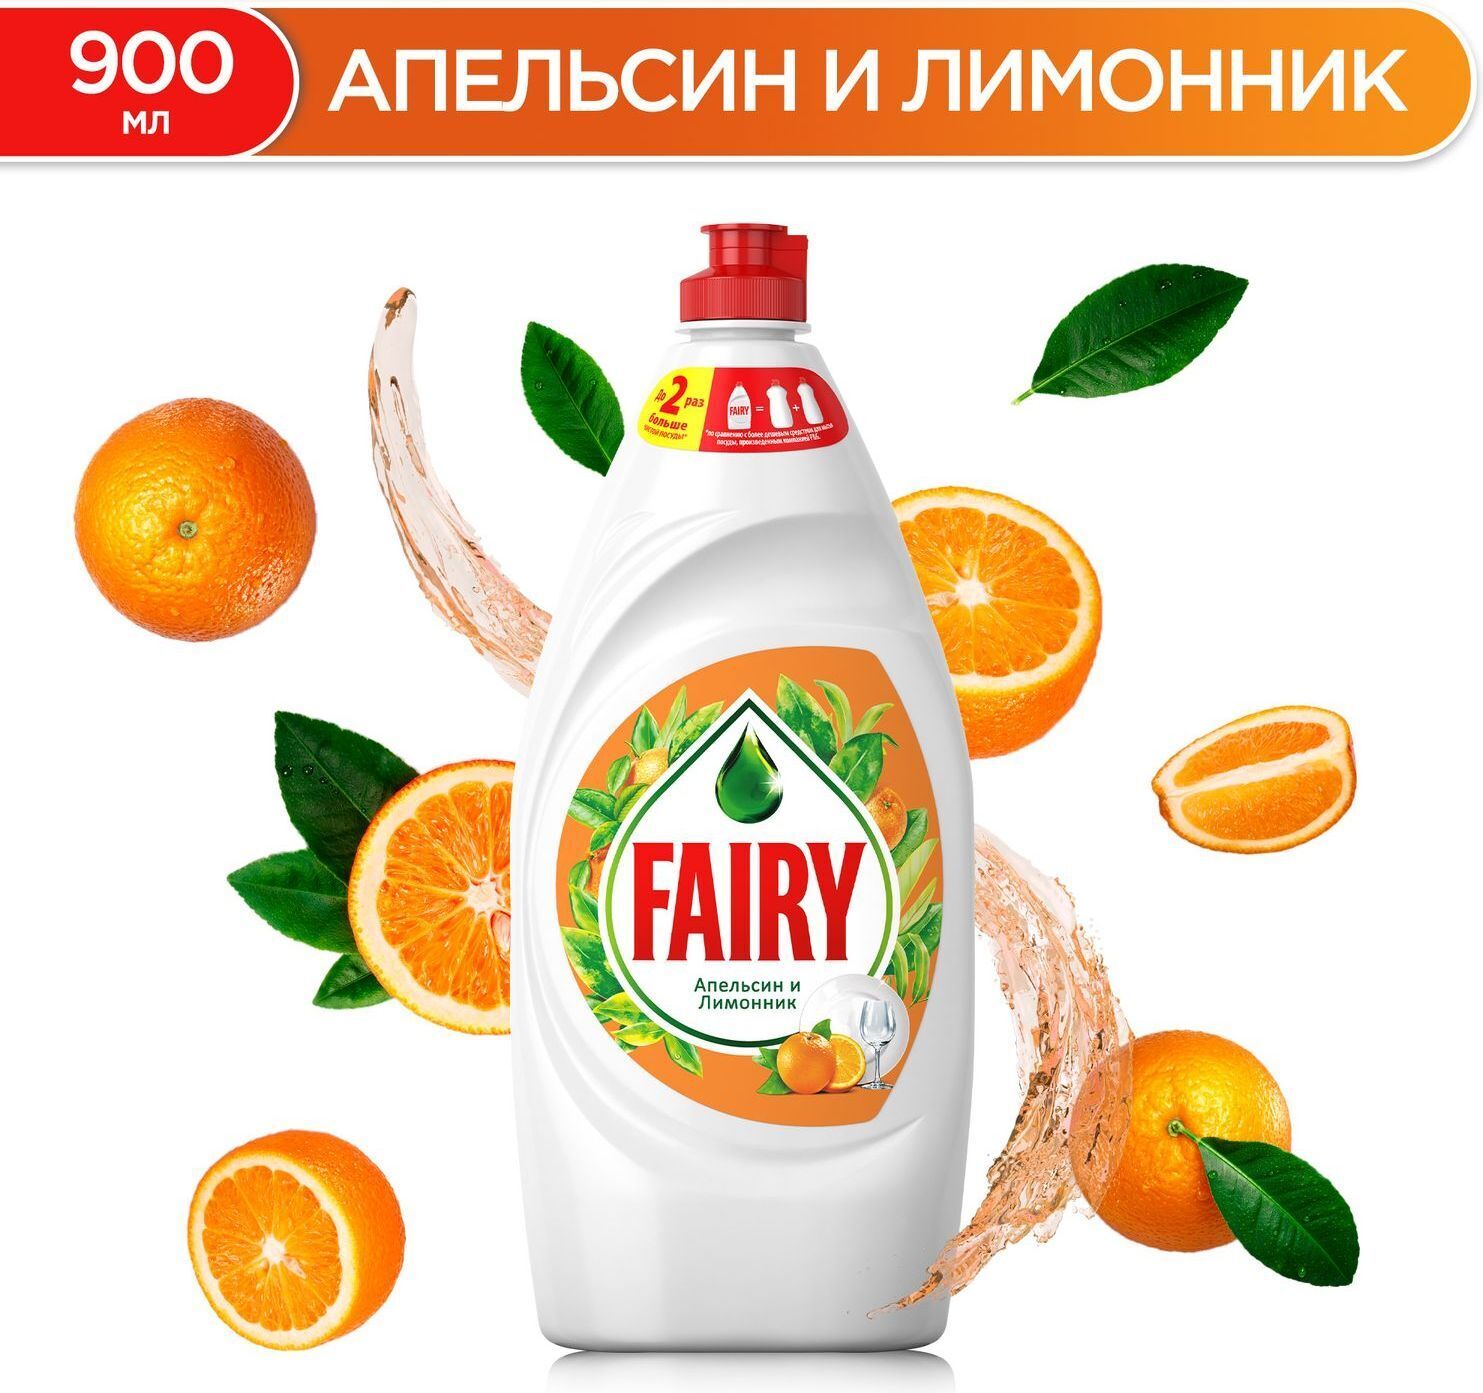 Средство для мытья посуды FAIRY, 900мл, жидкость, апельсин и лимонник (00000370)